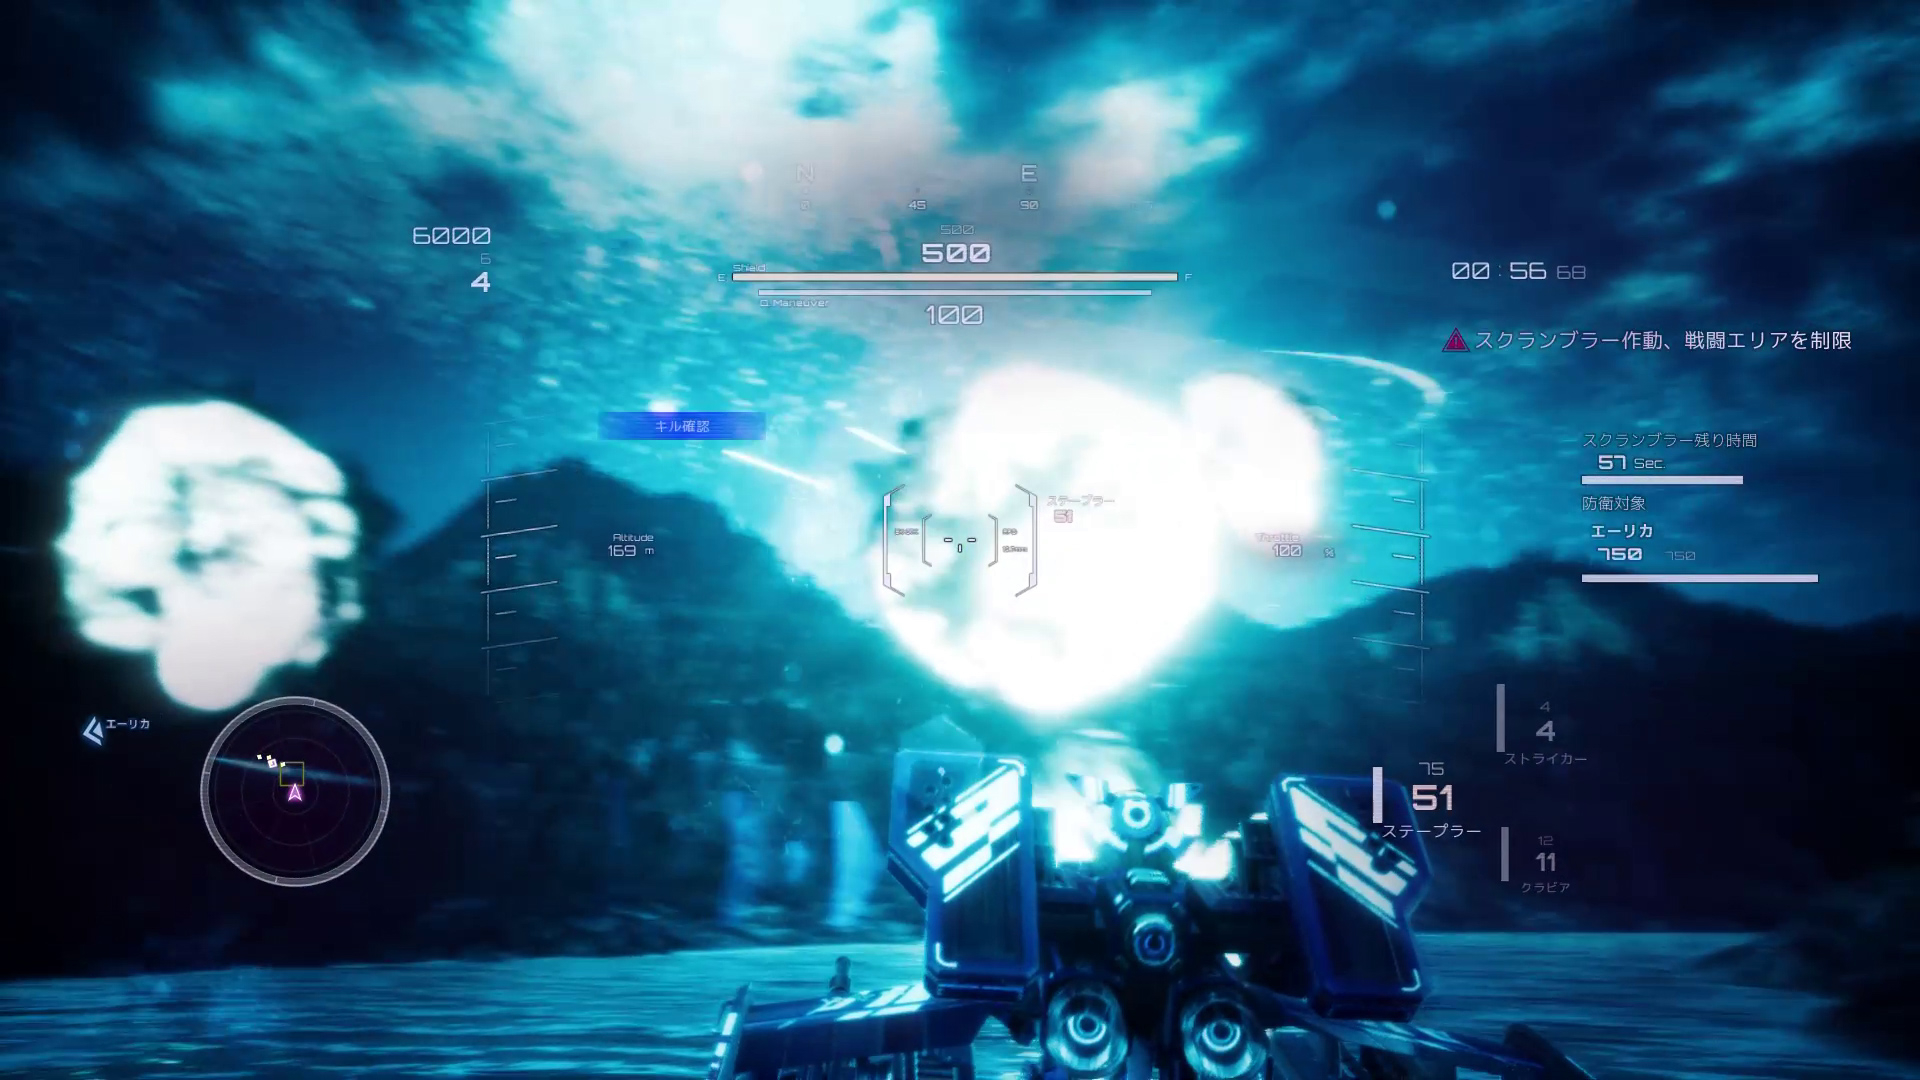 美少女空战 机甲射击游戏《展翼少女》将登陆PS4